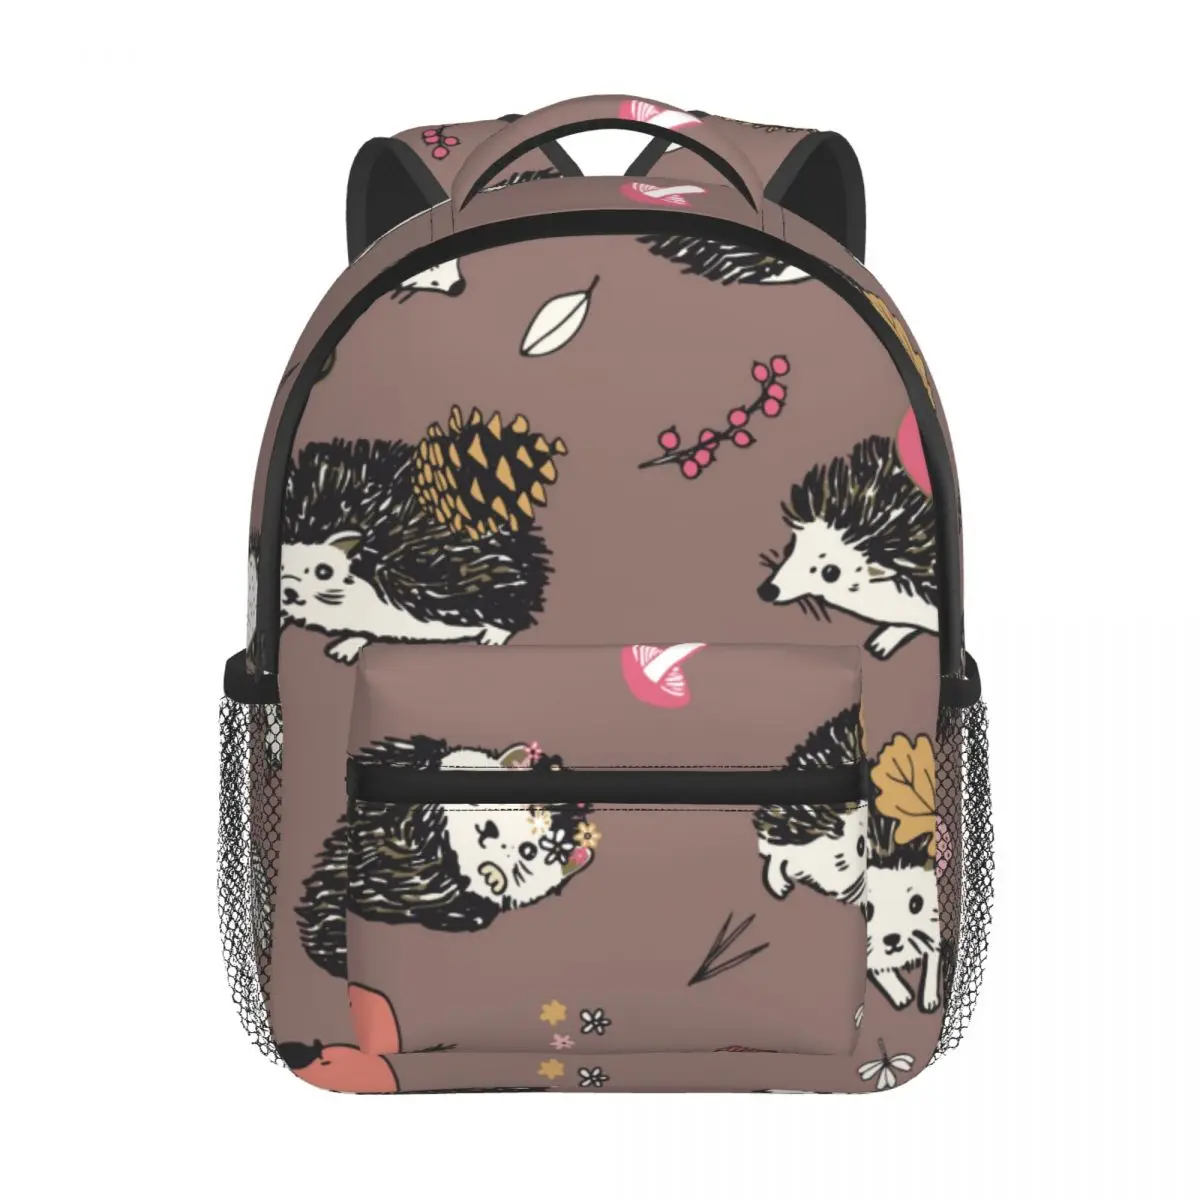 2022 Children Backpack Toddler Kids School Bag Hedgehog Forest Animals Pattern Kindergarten Bag for Girl Boys